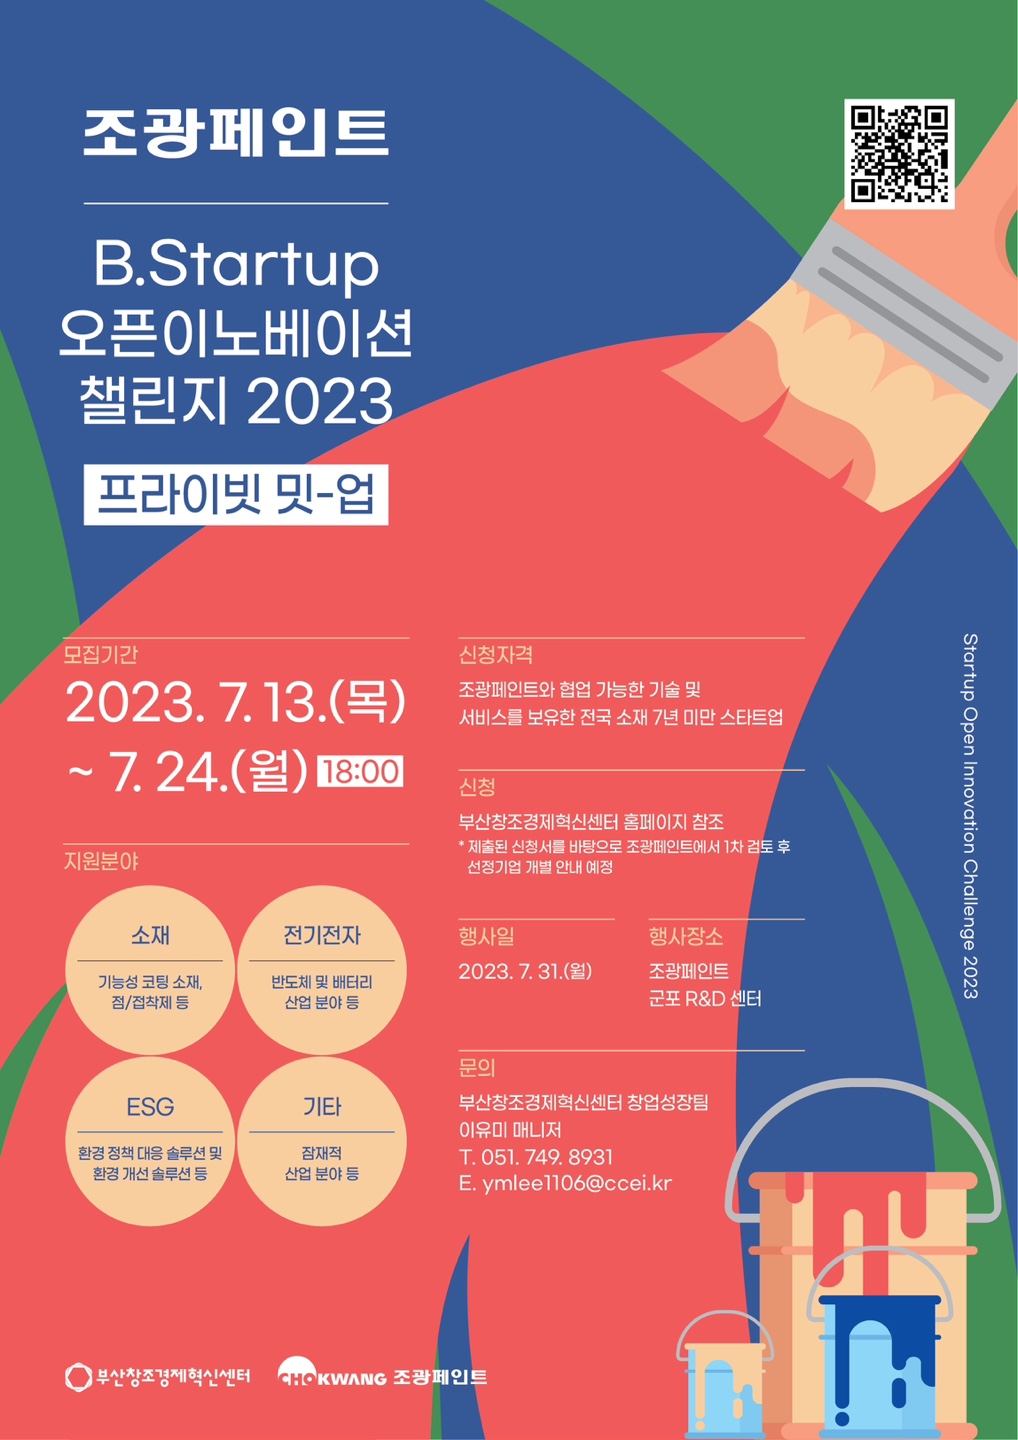 [À¥Æ÷½ºÅÍ] Á¶±¤ÆäÀÎÆ®¡¿B.Startup ¿ÀÇÂÀÌ³ëº£ÀÌ¼Ç Ã§¸°Áö 2023 ÇÁ¶óÀÌºø ¹Ô-¾÷ Âü°¡±â¾÷ ¸ðÁý.jpg